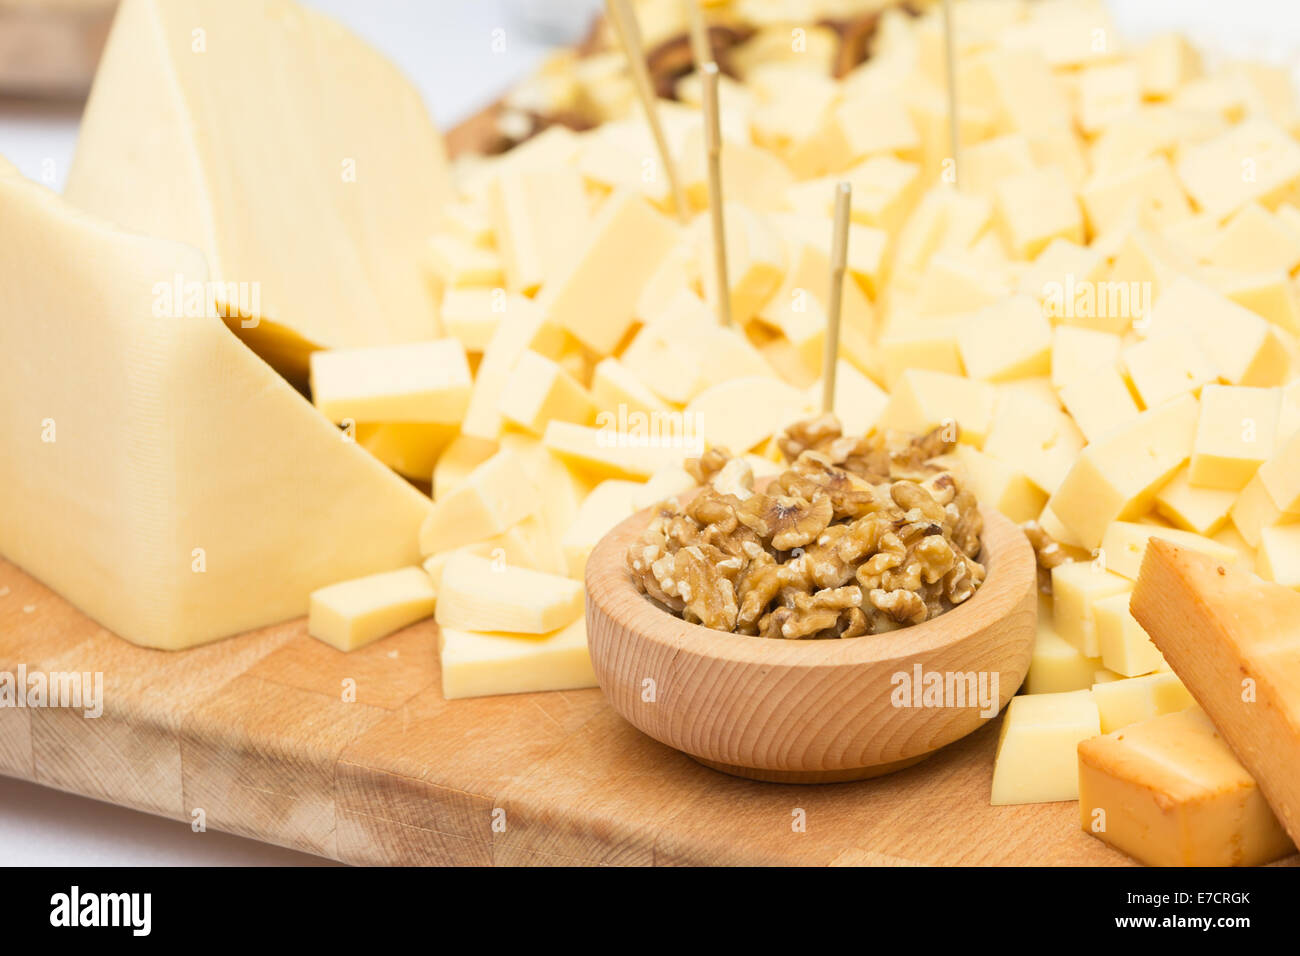 Il piatto di formaggi con frutta secca e miele Foto Stock